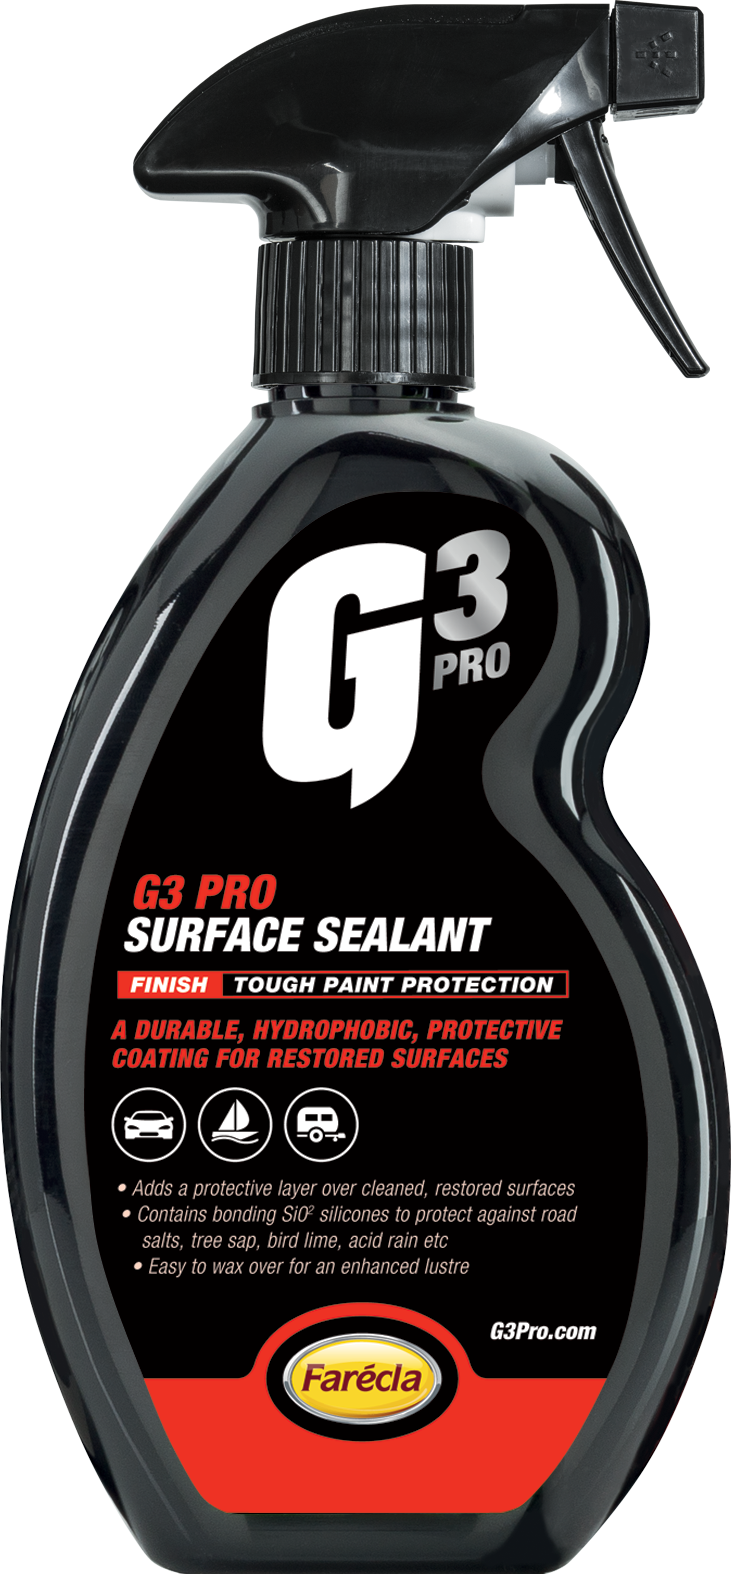 G3 Professional Surface Sealant, Прочное гидрофобное покрытие, Farecla 7210